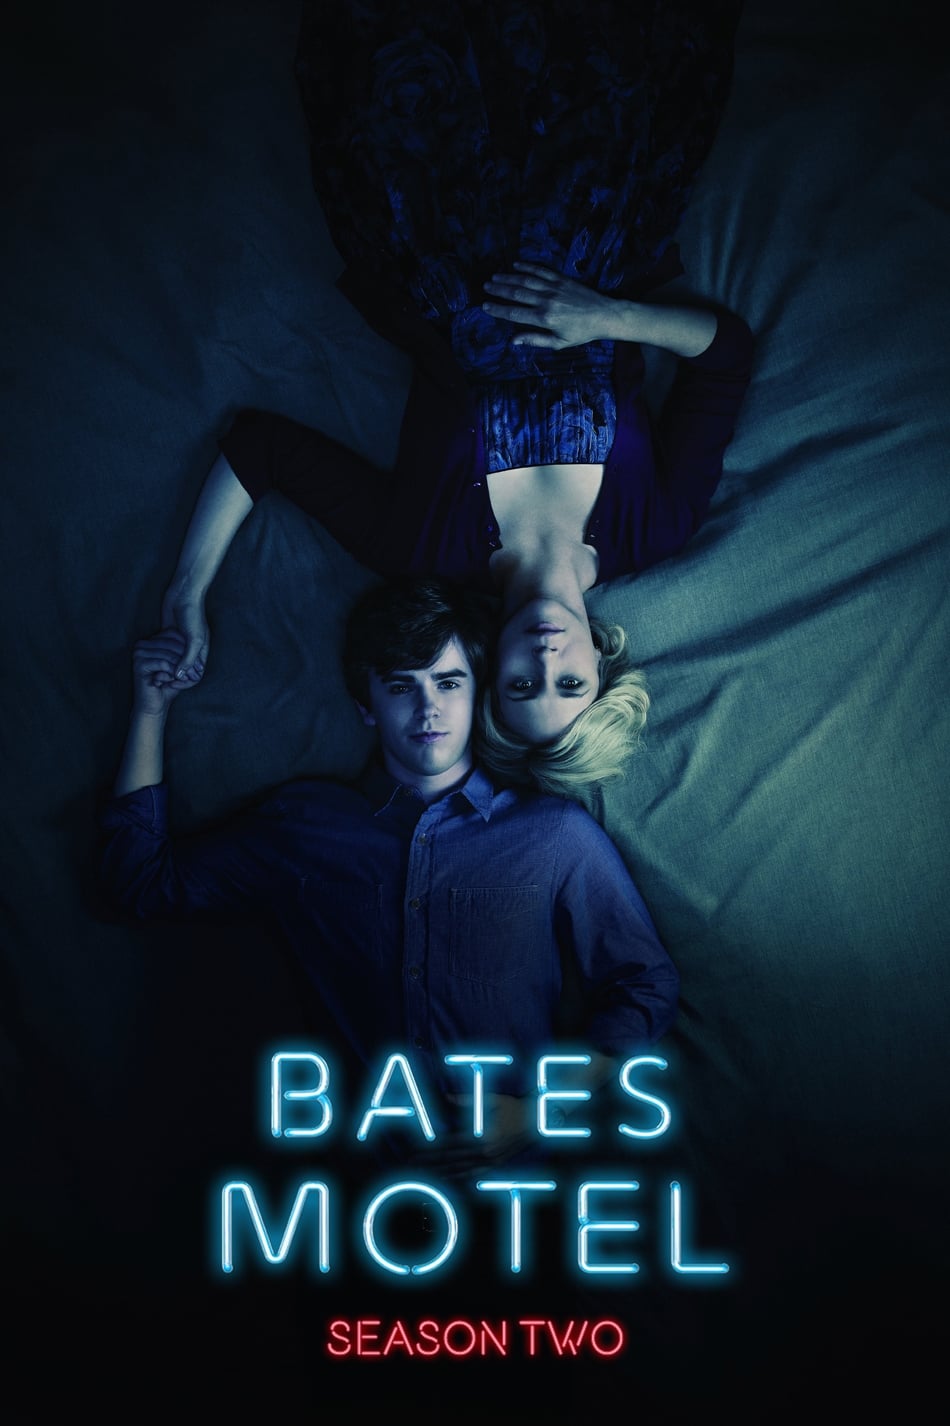 ดูหนังออนไลน์ฟรี Bates Motel (2014) Season 2 เบส โมเทล ปี 2 ตอนที่ 1 (ซับไทย)